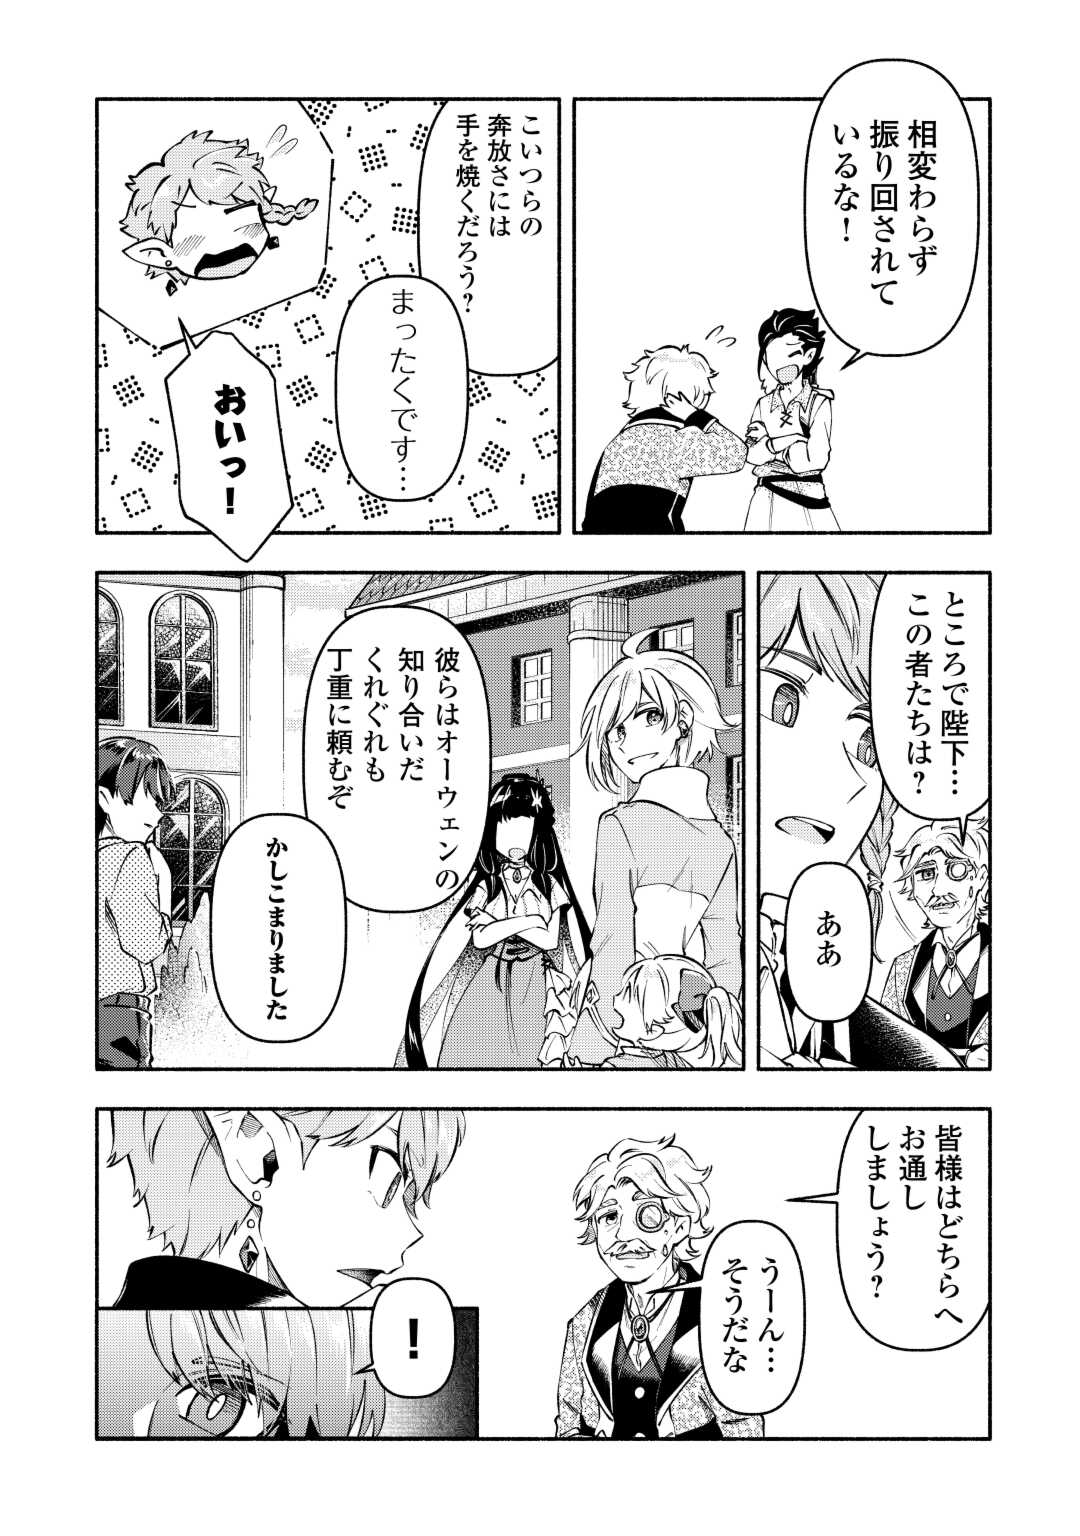 Osanago wa Saikyou no Tamer da to Kizuiteimasen! - Chapter 10 - Page 3